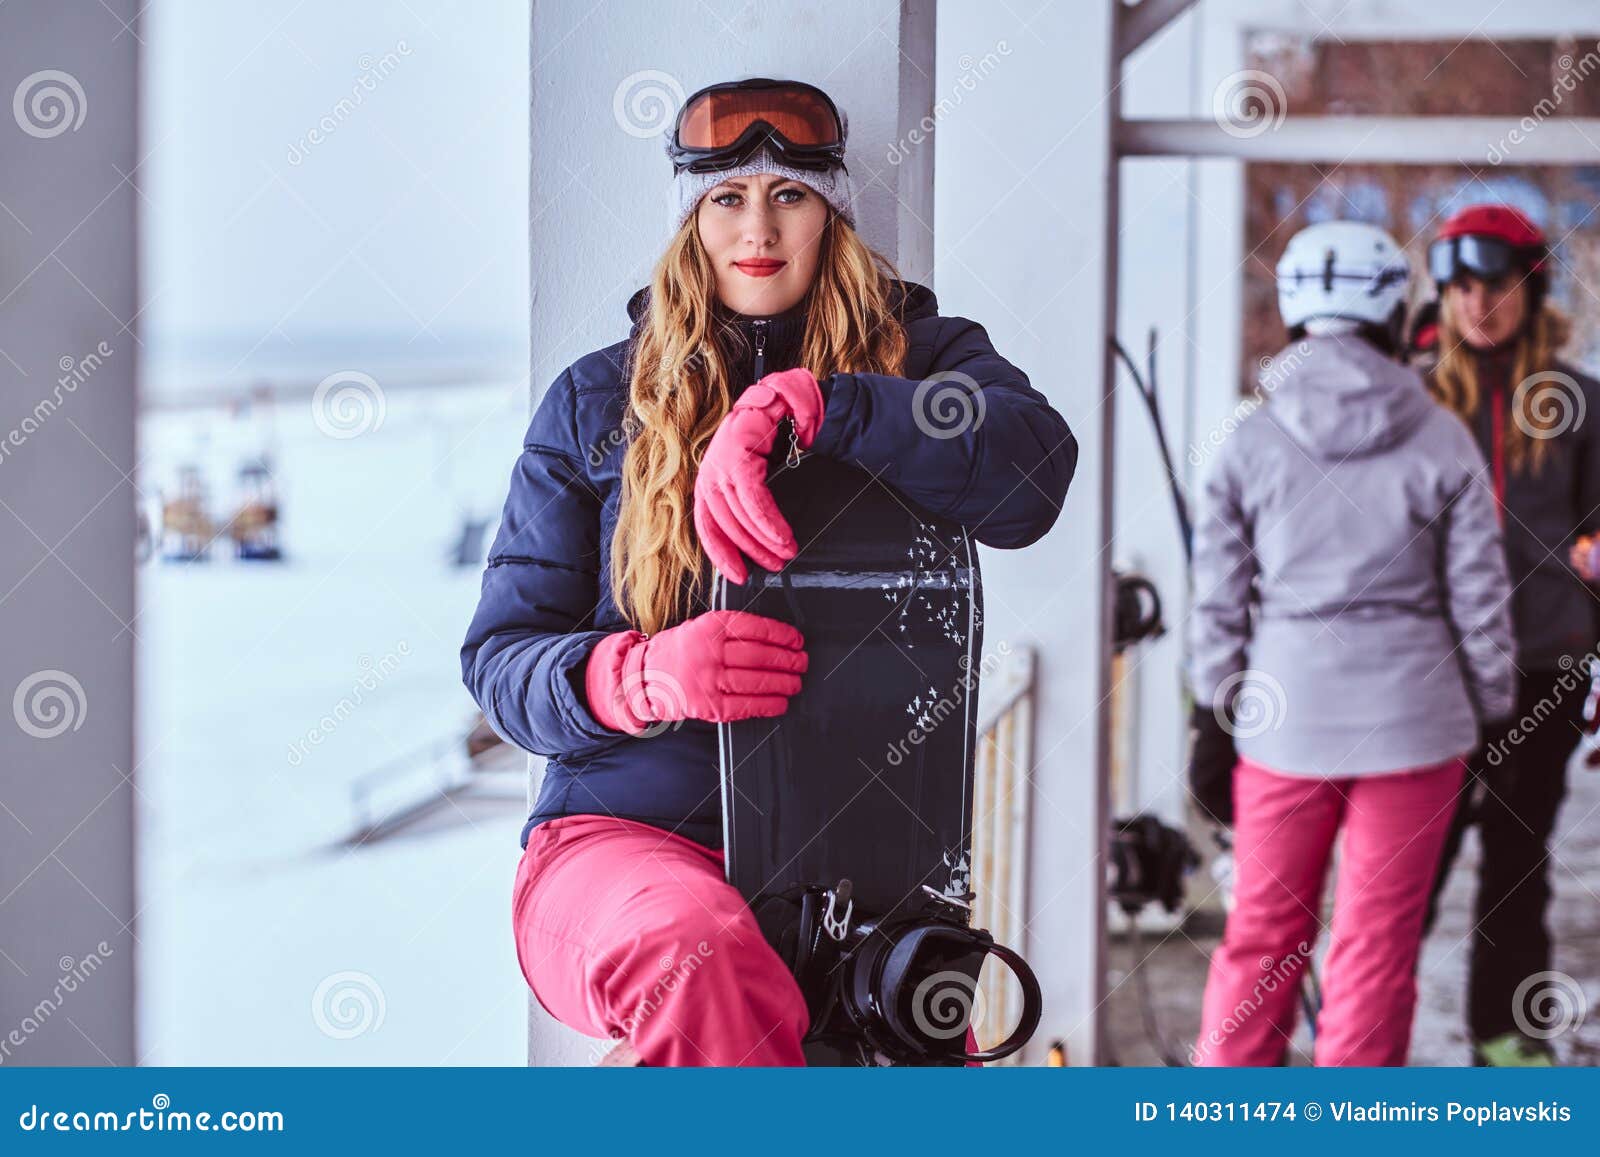 Ropa De Deportes Del Invierno La Mujer Que Lleva Rubia Que Presenta Con Una Snowboard de archivo - Imagen de amigos, activo: 140311474